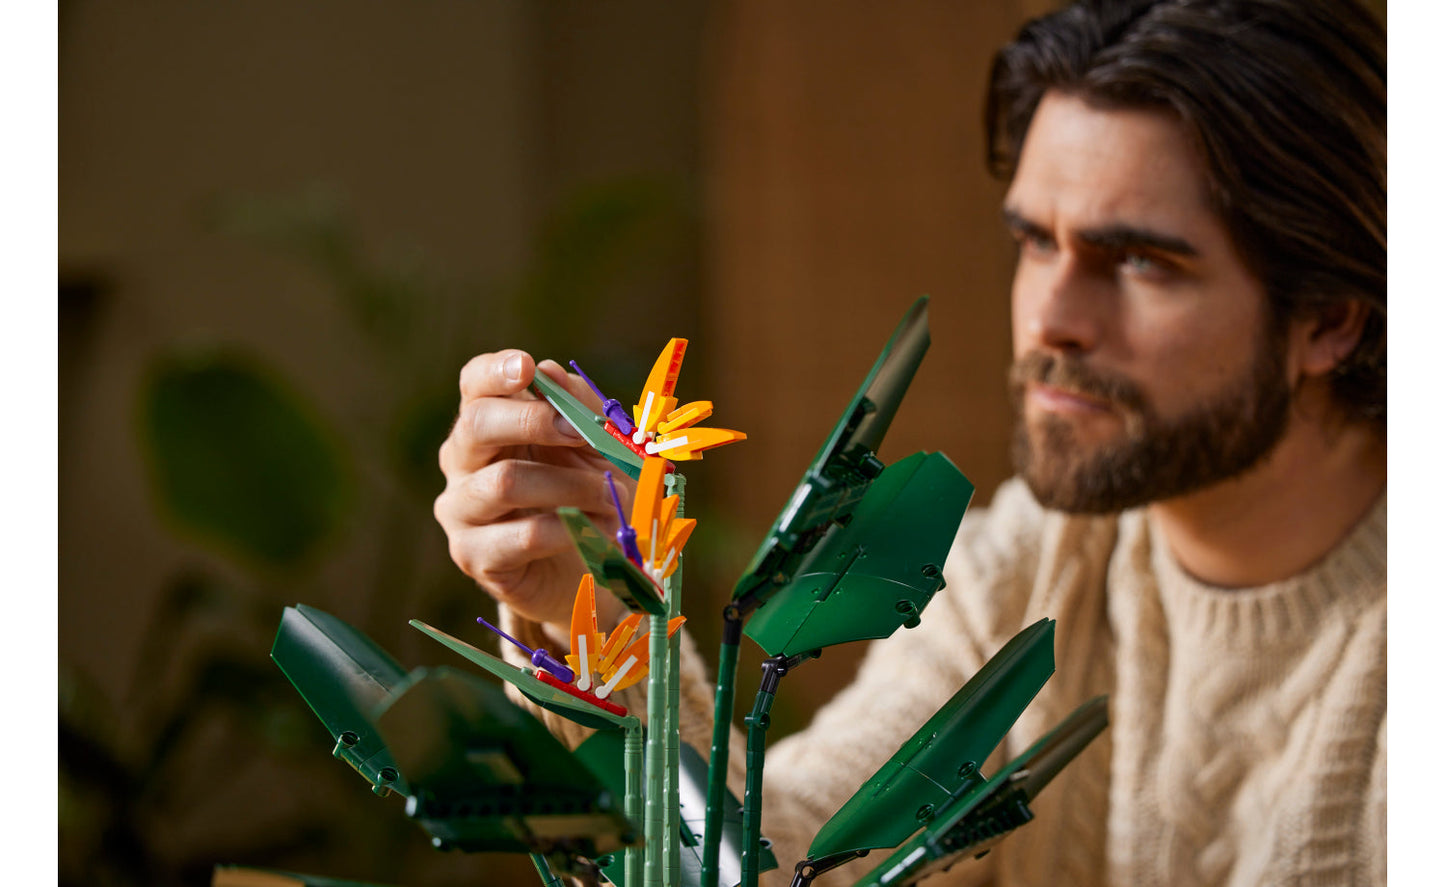 Lego Botanical Collection - Birds of Paradise